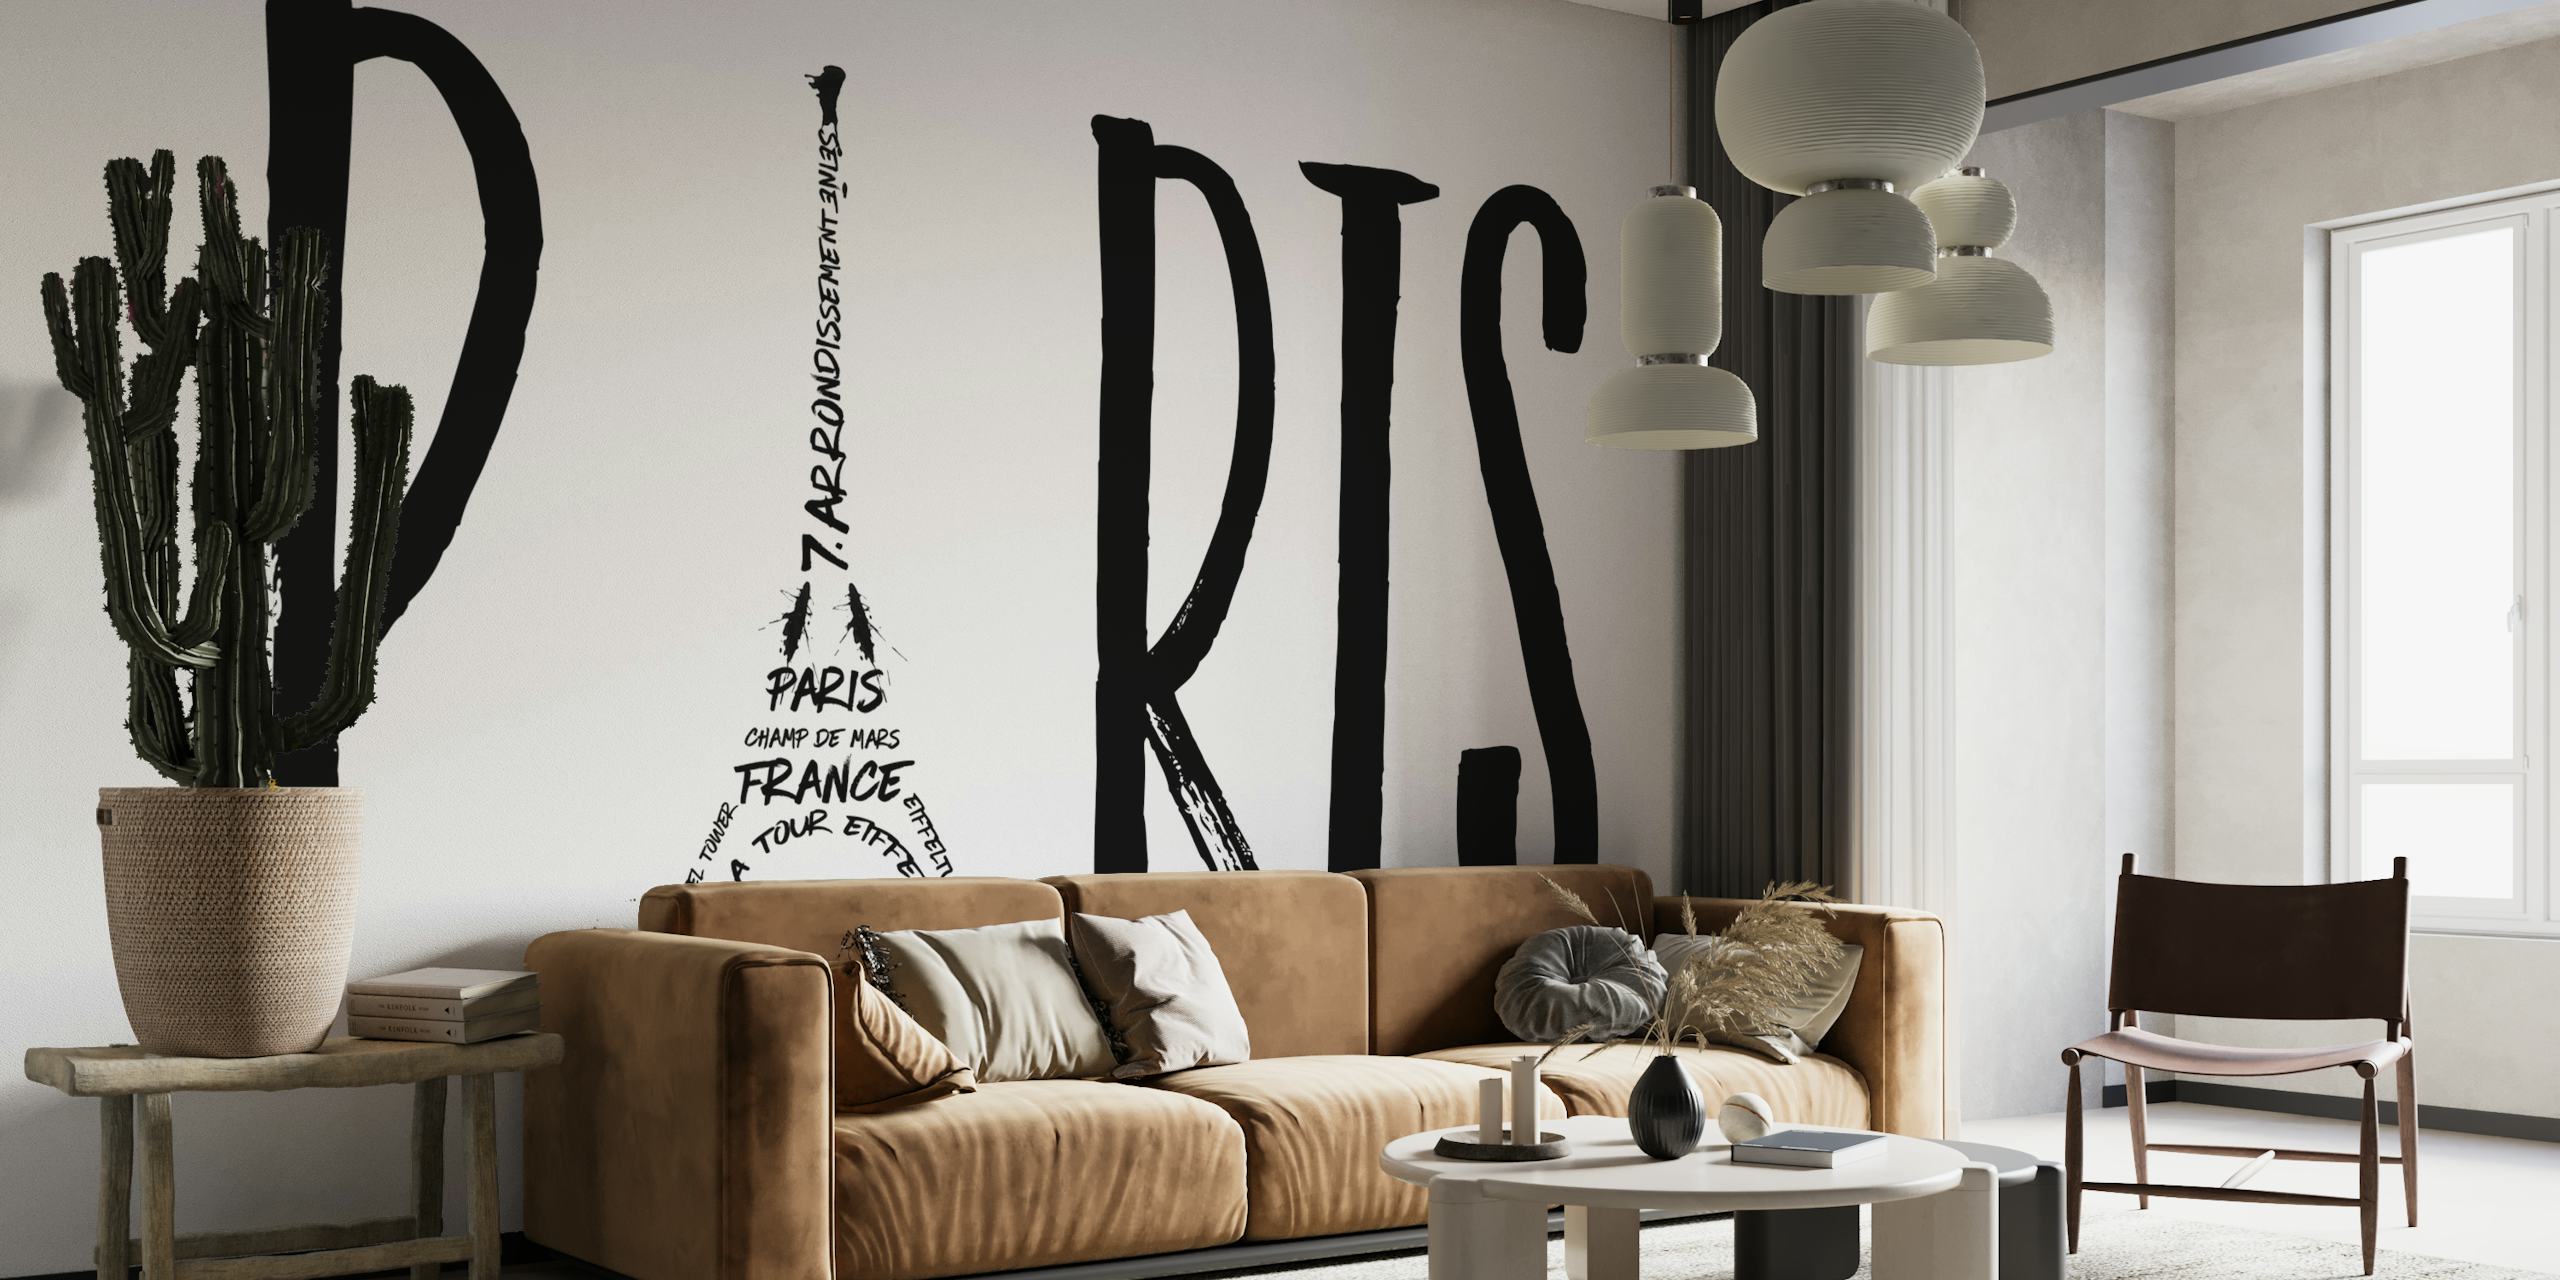 Svart og hvit Paris-typografikunst med Eiffeltårnet integrert i designet